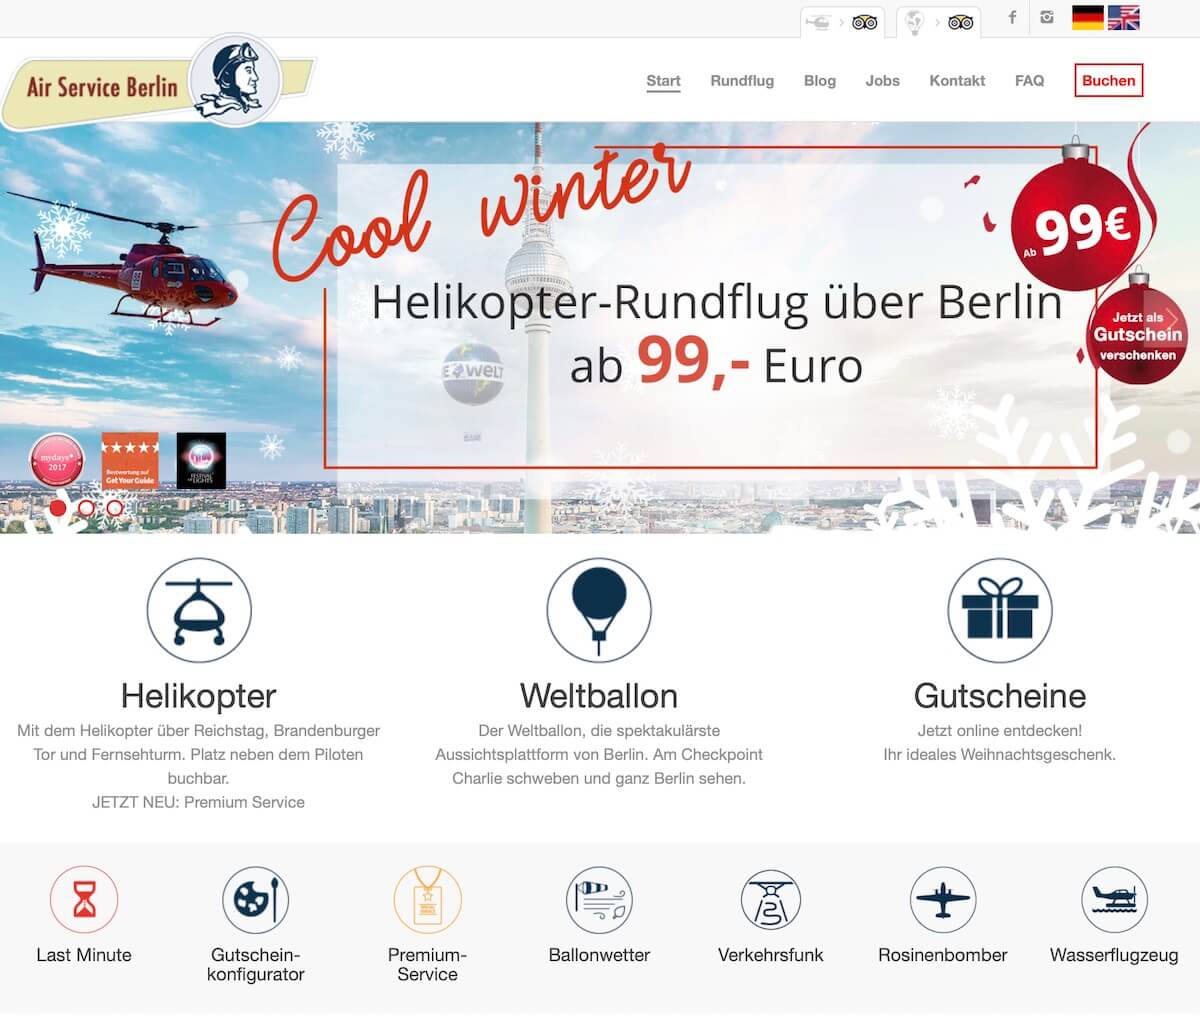 bookingkit-marketing-weihnachten-beispiel-air-service-berlin